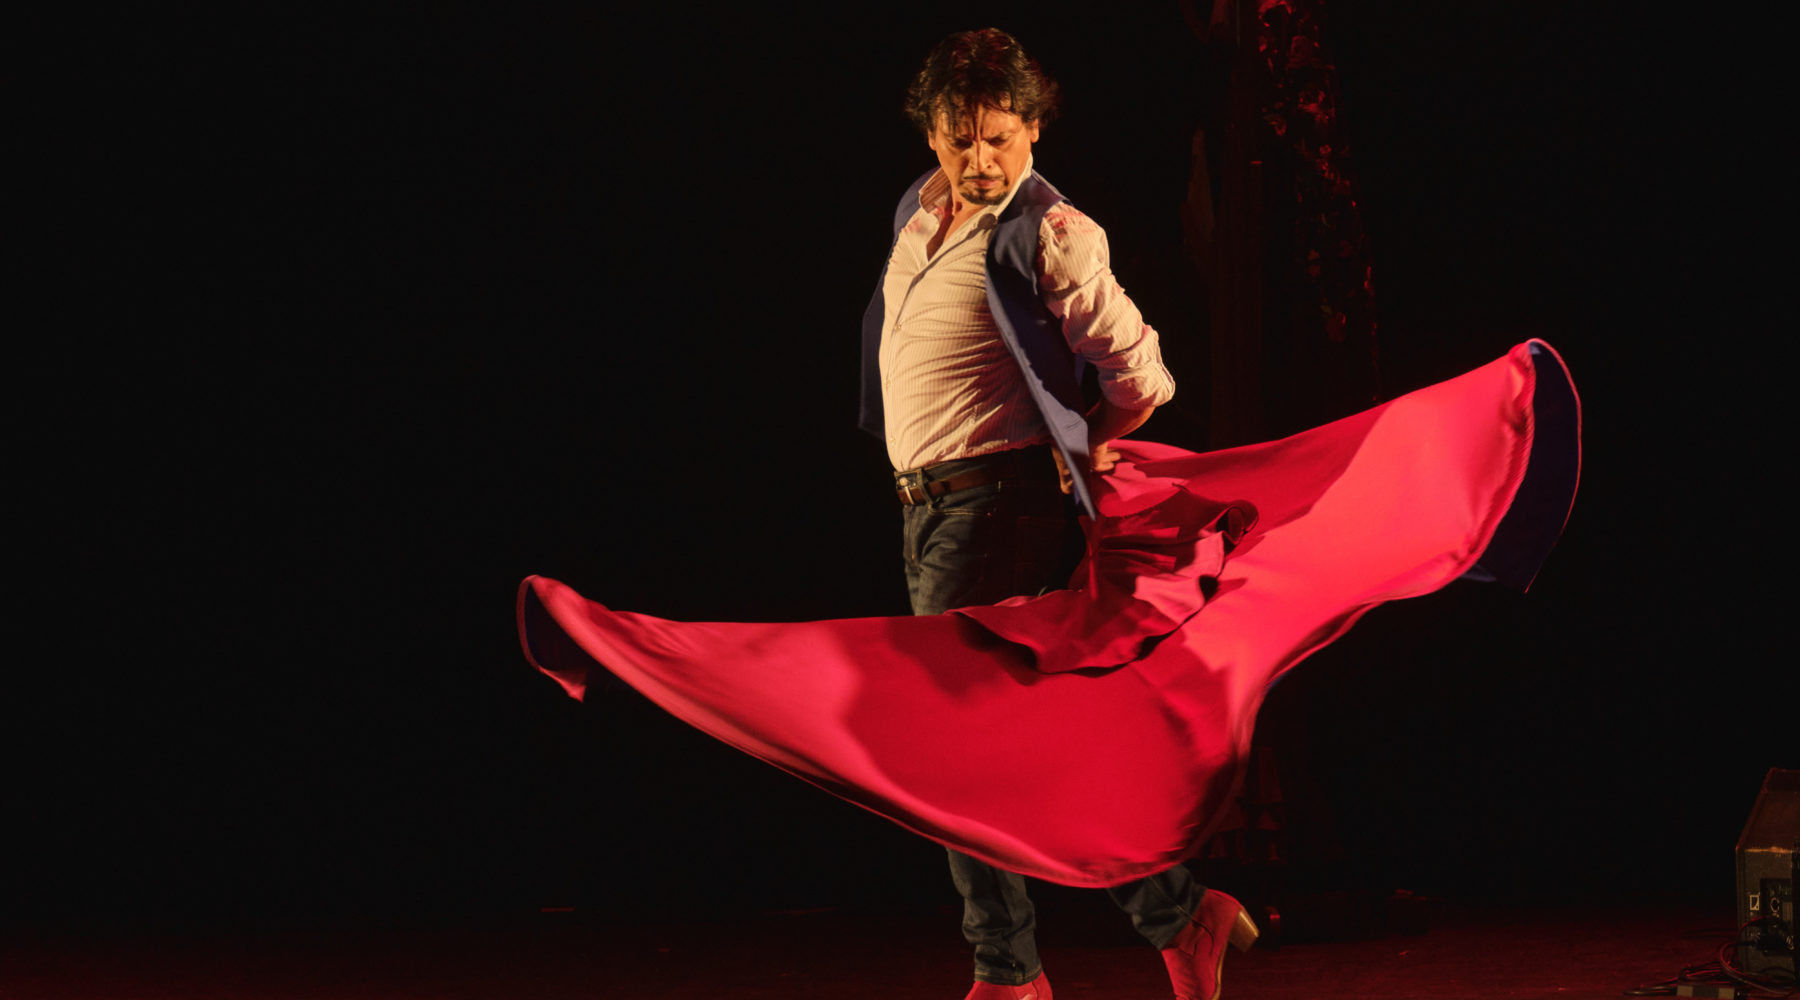 [Cancelado] Espectáculo flamenco del bailador nacional Pedro Fernández